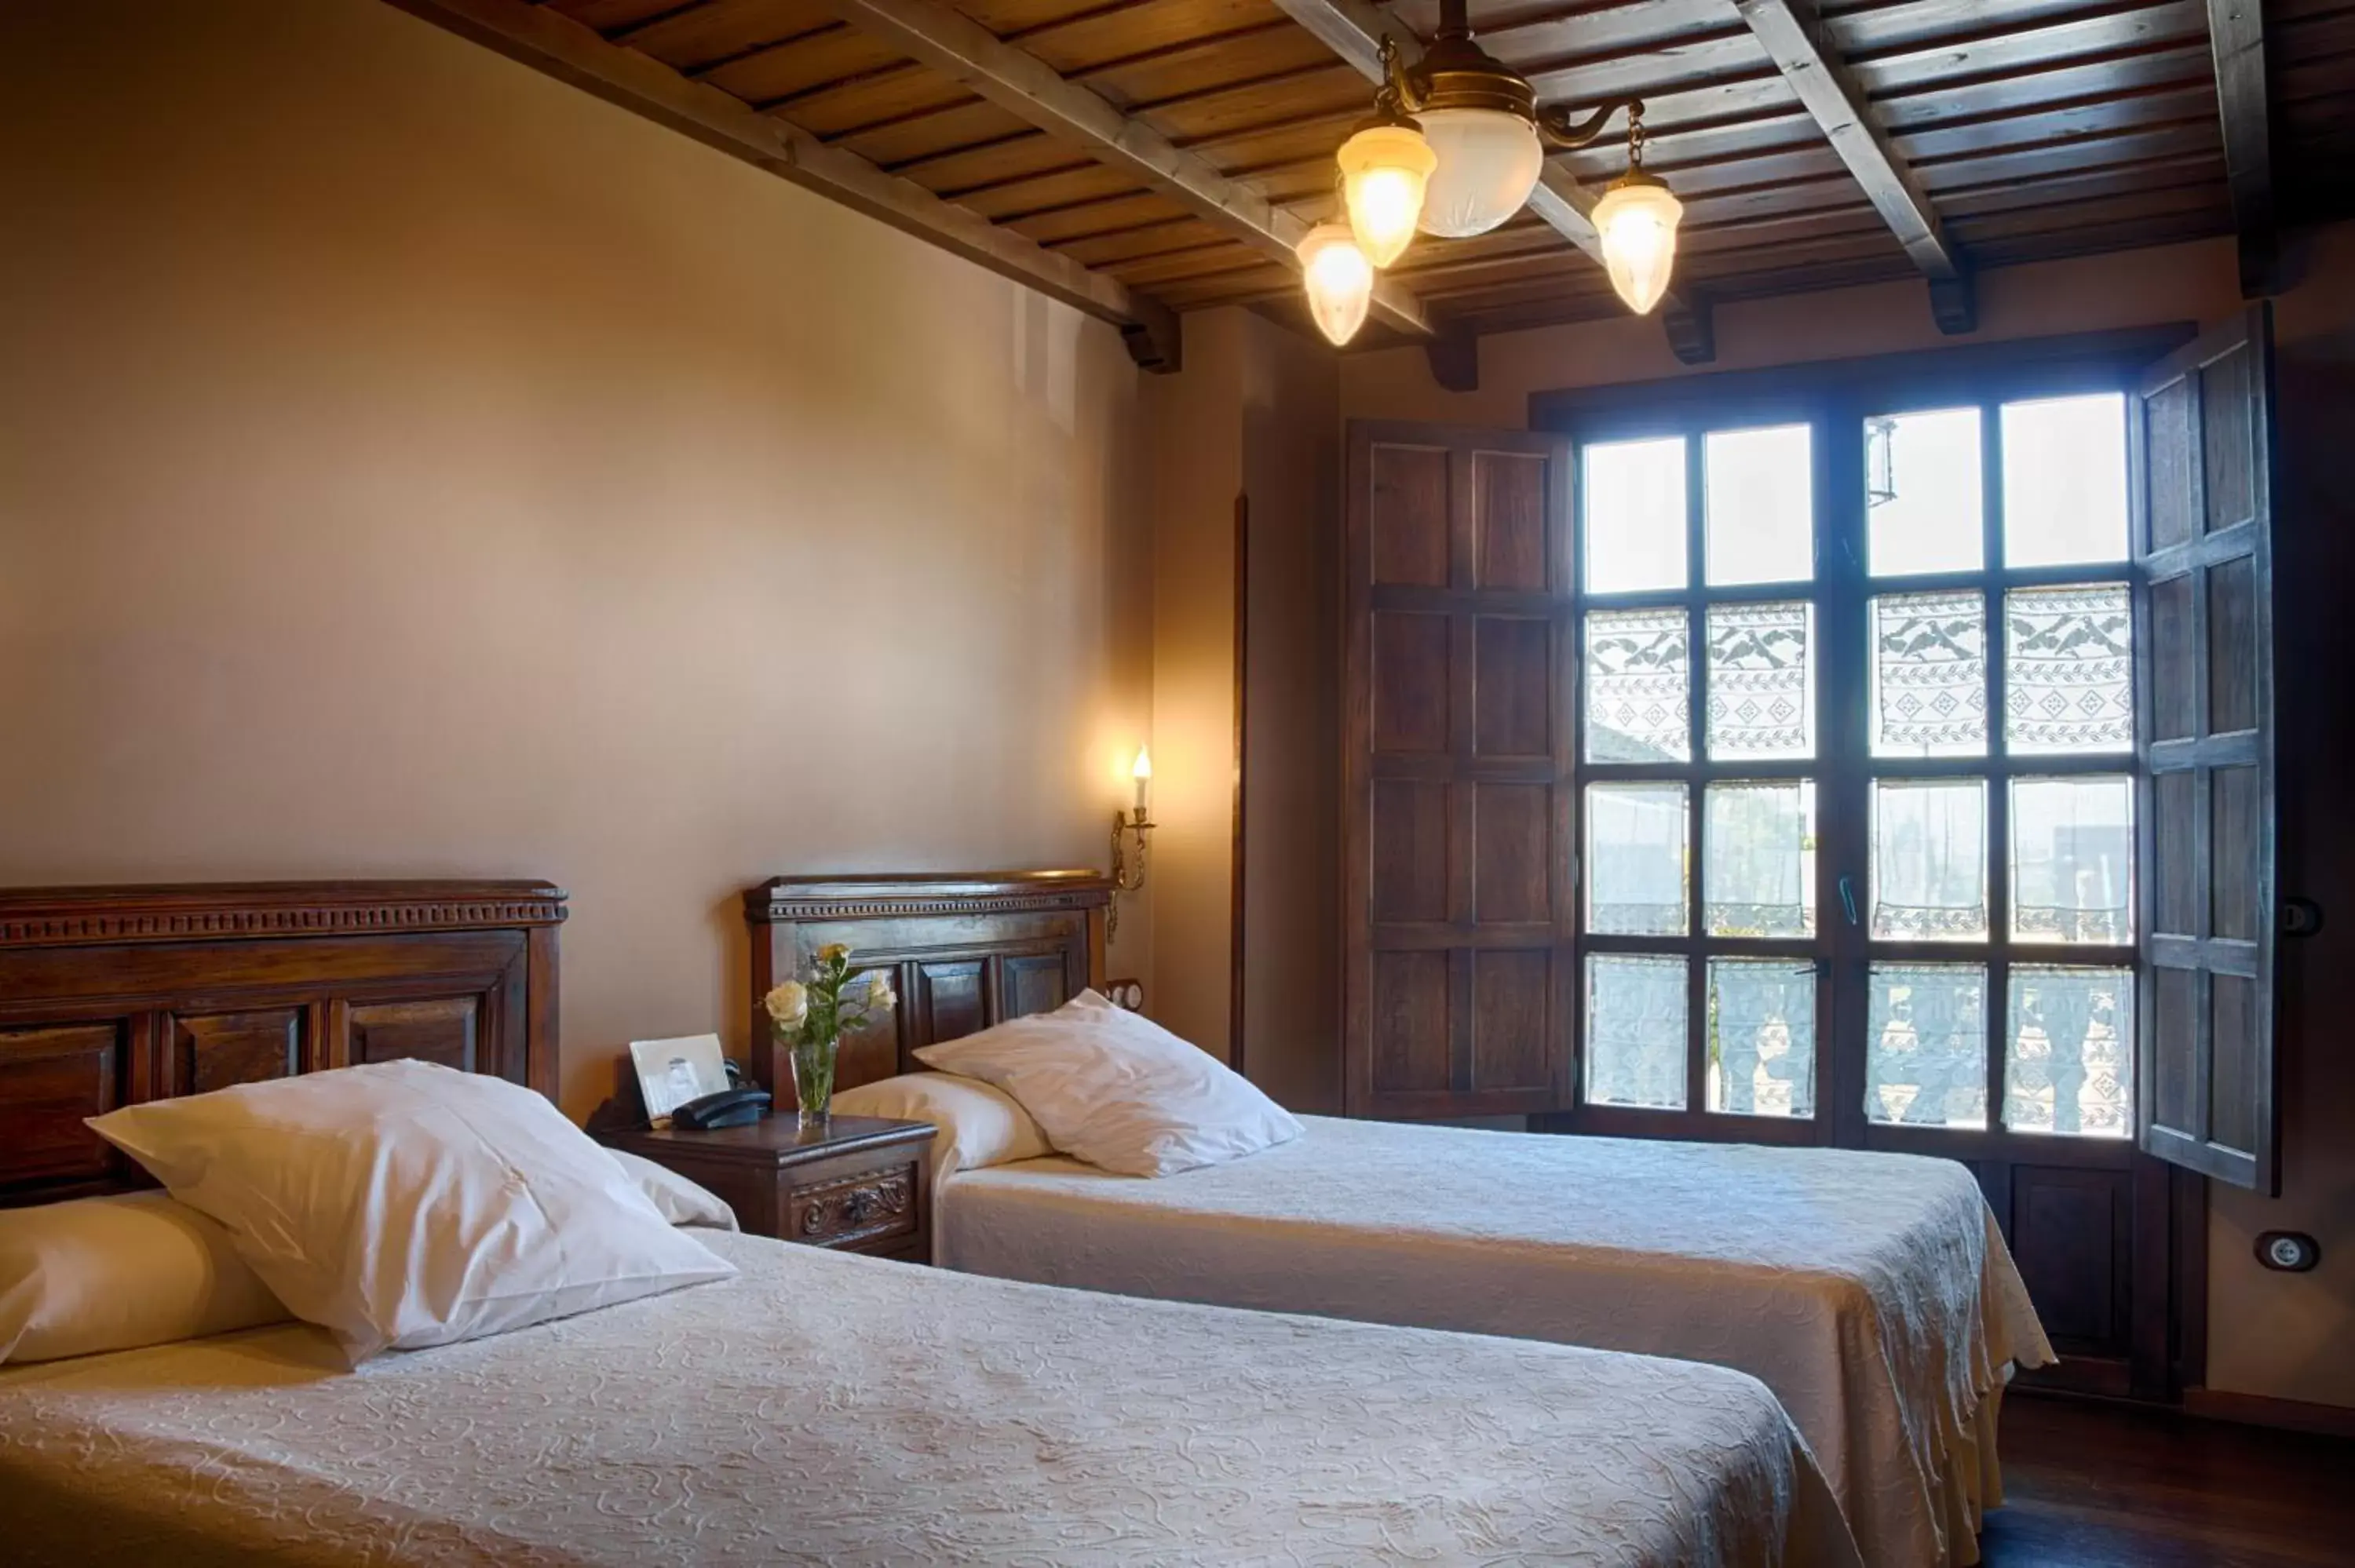 Bed, Room Photo in La Moncloa de San Lazaro